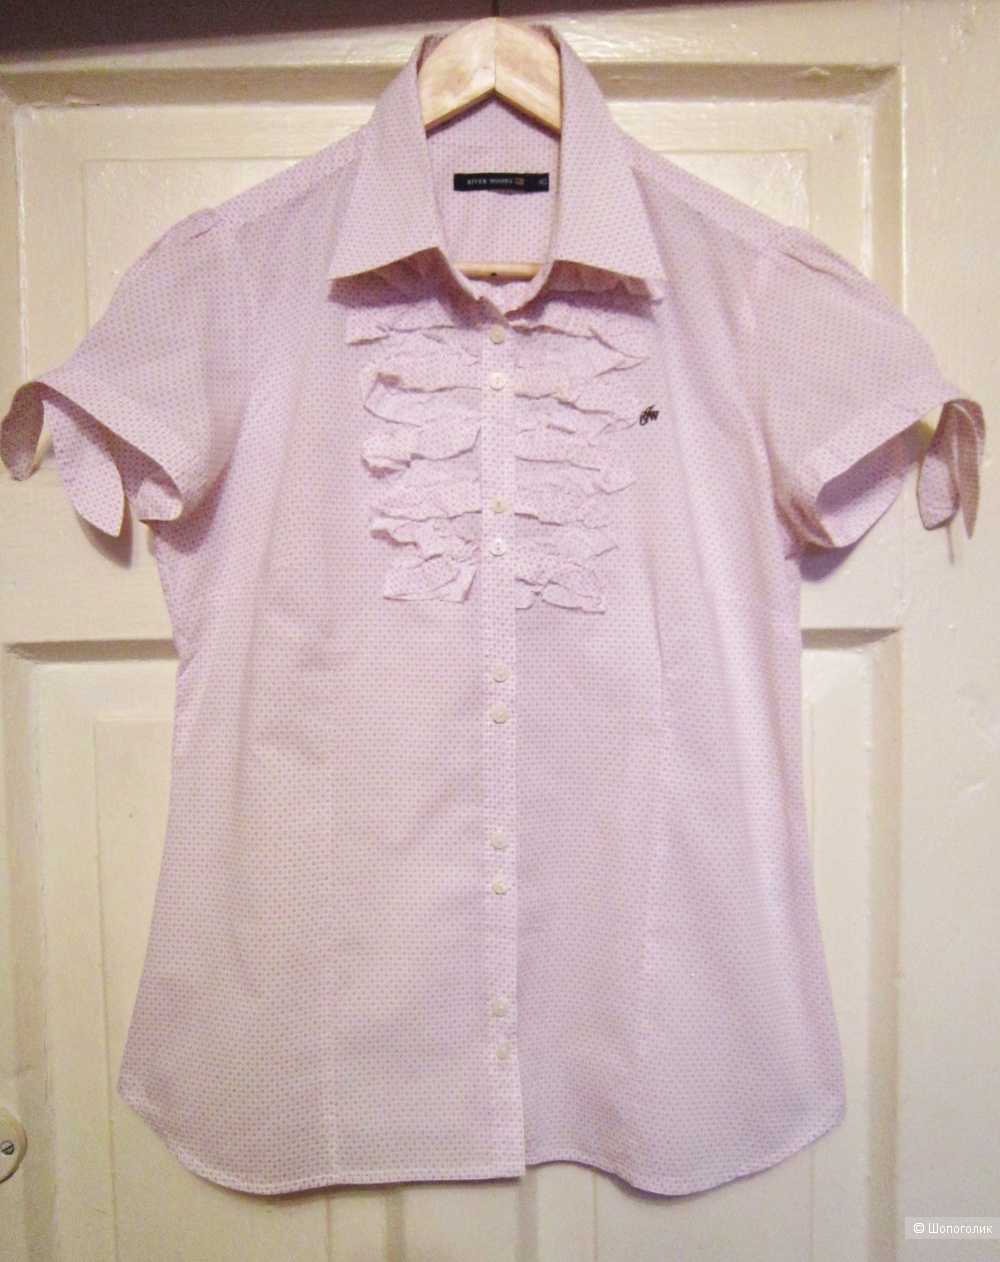 Блуза/ рубашка, River woods, 46/44 размер.